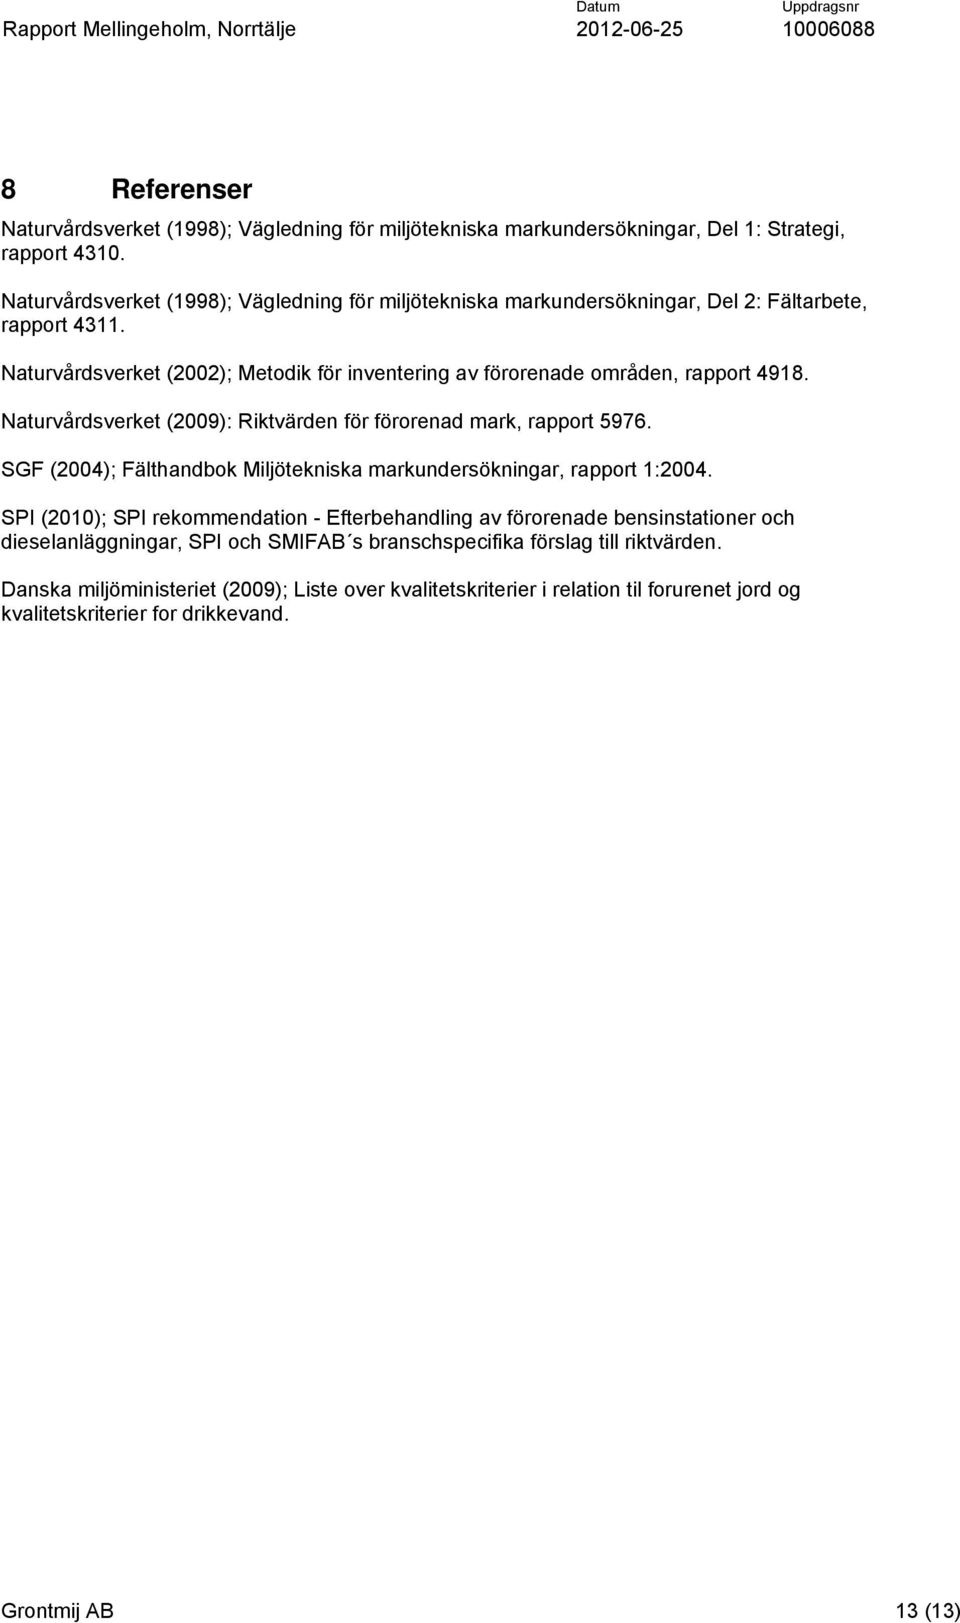 Naturvårdsverket (2009): Riktvärden för förorenad mark, rapport 5976. SGF (2004); Fälthandbok Miljötekniska markundersökningar, rapport 1:2004.